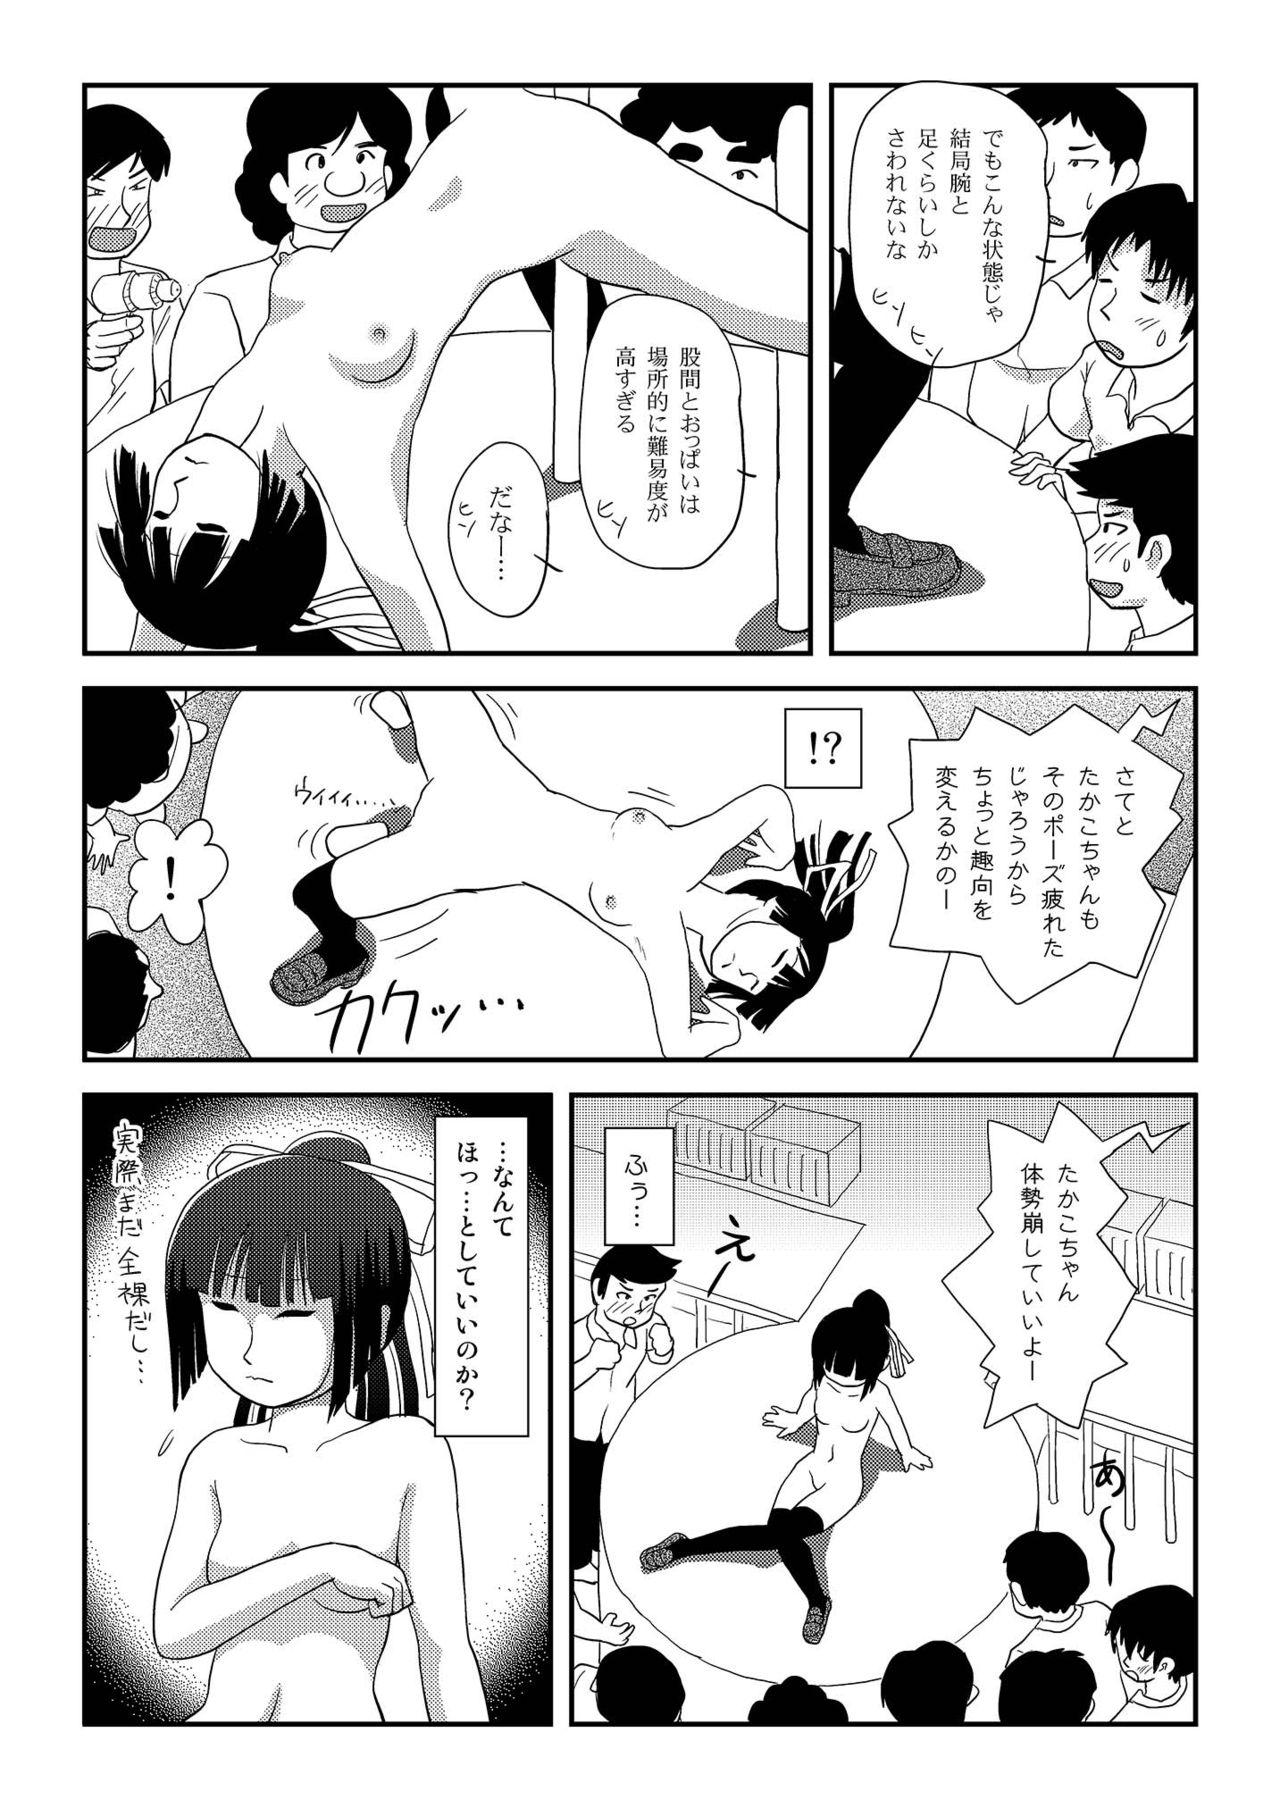 Gayhardcore Sakura Kotaka no Roshutsubiyori 8 - Original Boy Fuck Girl - Page 8